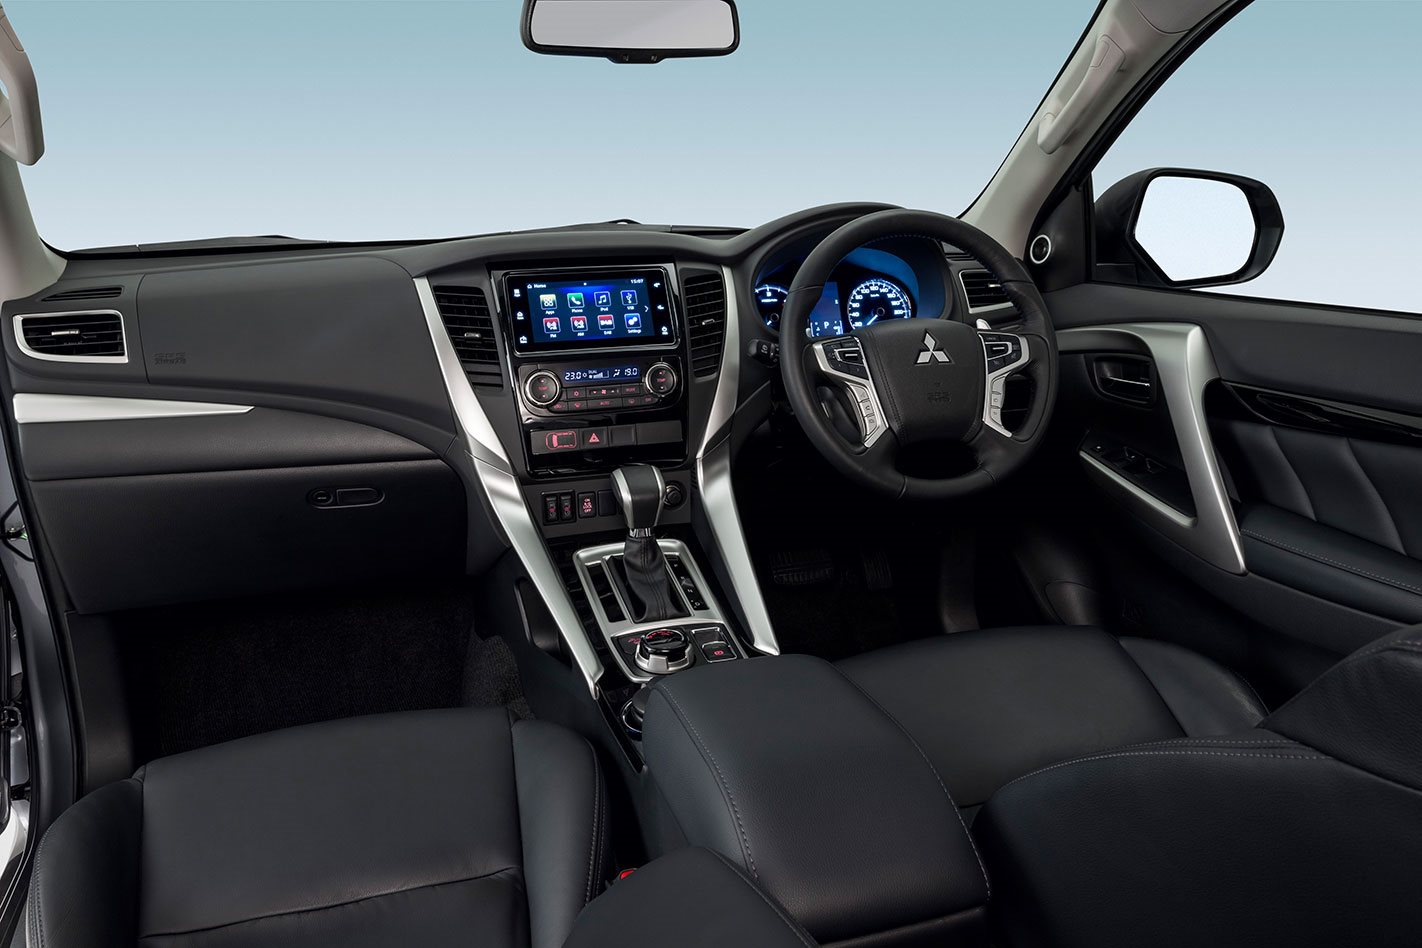 Mitsubishi Pajero Sport 2017 - inside the cabin, all-black interior. 